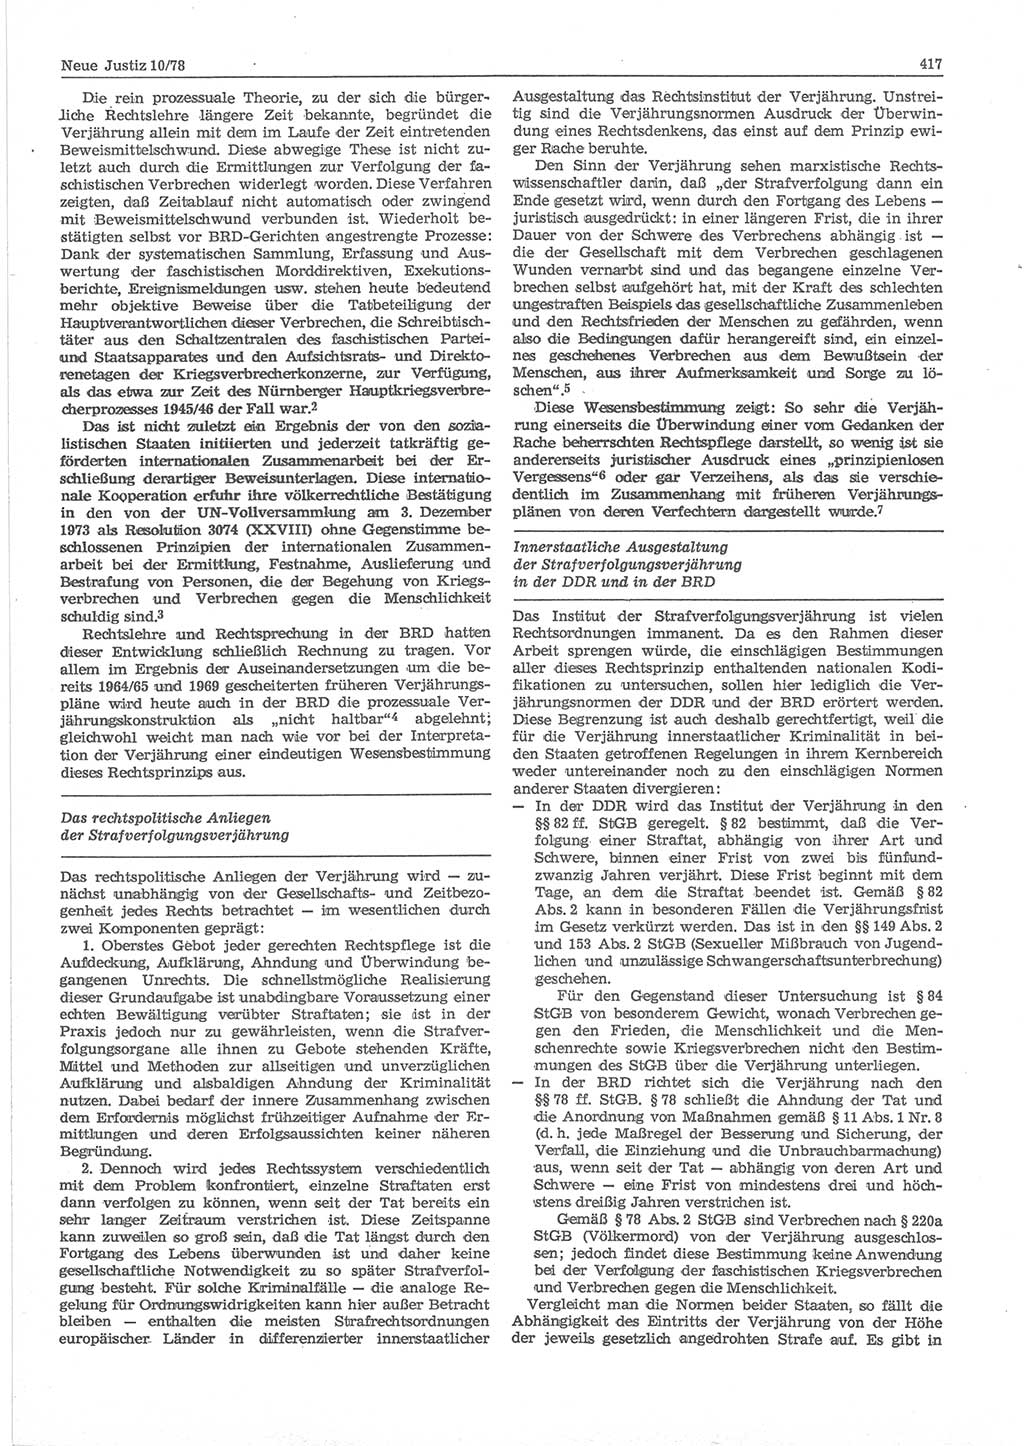 Neue Justiz (NJ), Zeitschrift für sozialistisches Recht und Gesetzlichkeit [Deutsche Demokratische Republik (DDR)], 32. Jahrgang 1978, Seite 417 (NJ DDR 1978, S. 417)